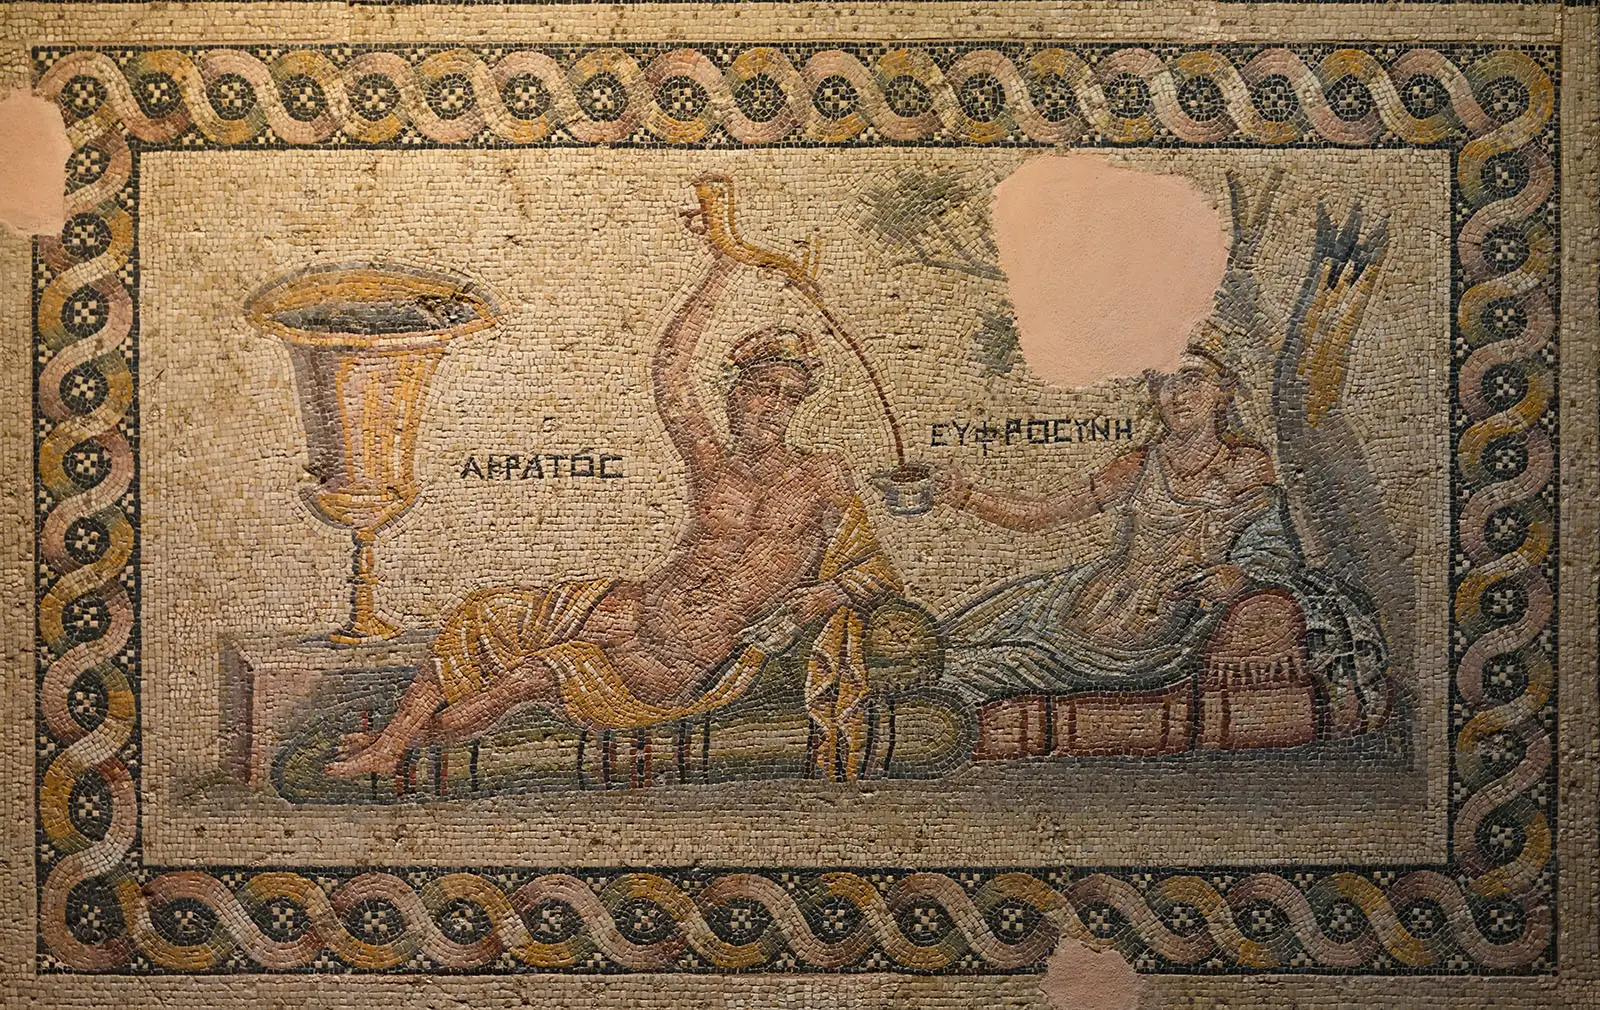 La historia de la cerveza en el Imperio Romano: Se consumía más en las zonas limítrofes, donde el vino era más difícil de beber